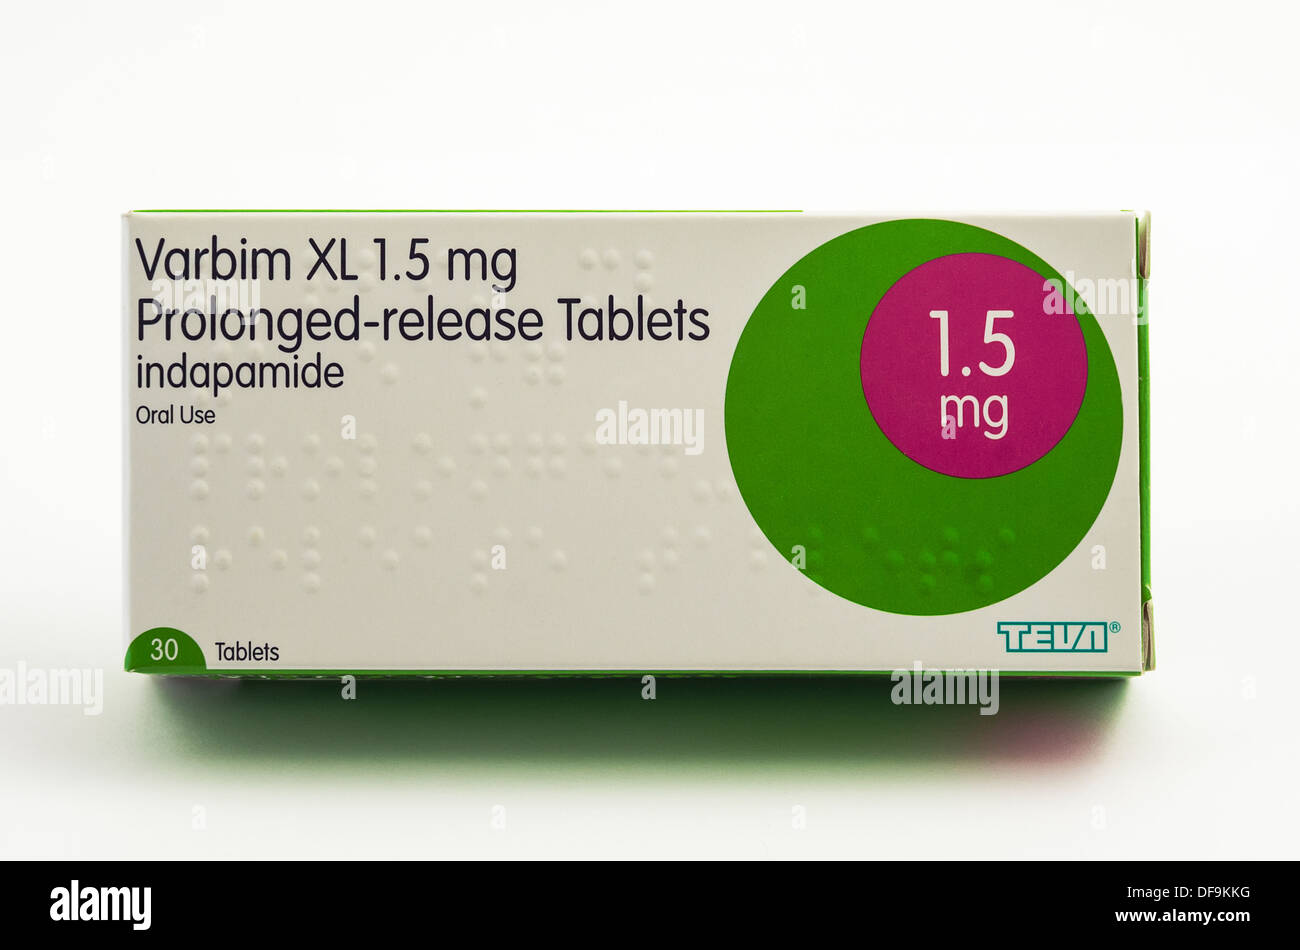 Indapamid gezeigt hier unter dem Handelsnamen Varbim XL verlängerte Freisetzung Tabletten. Dies ist ein Diuretikum zur Behandlung von Bluthochdruck eingesetzt. Stockfoto